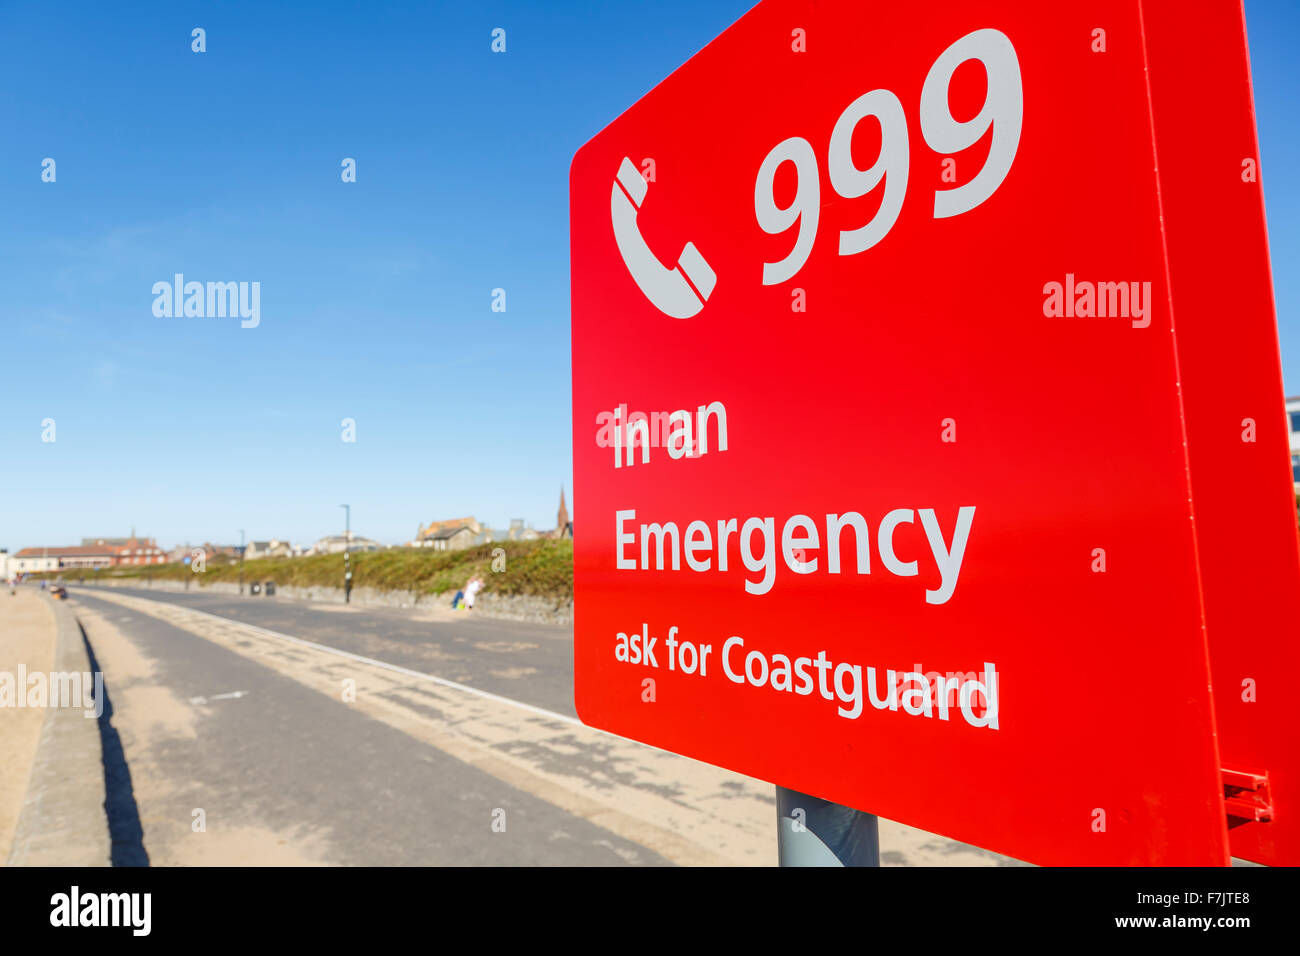 A Coastguard Emergency sign, Scotland, UK Stock Photo